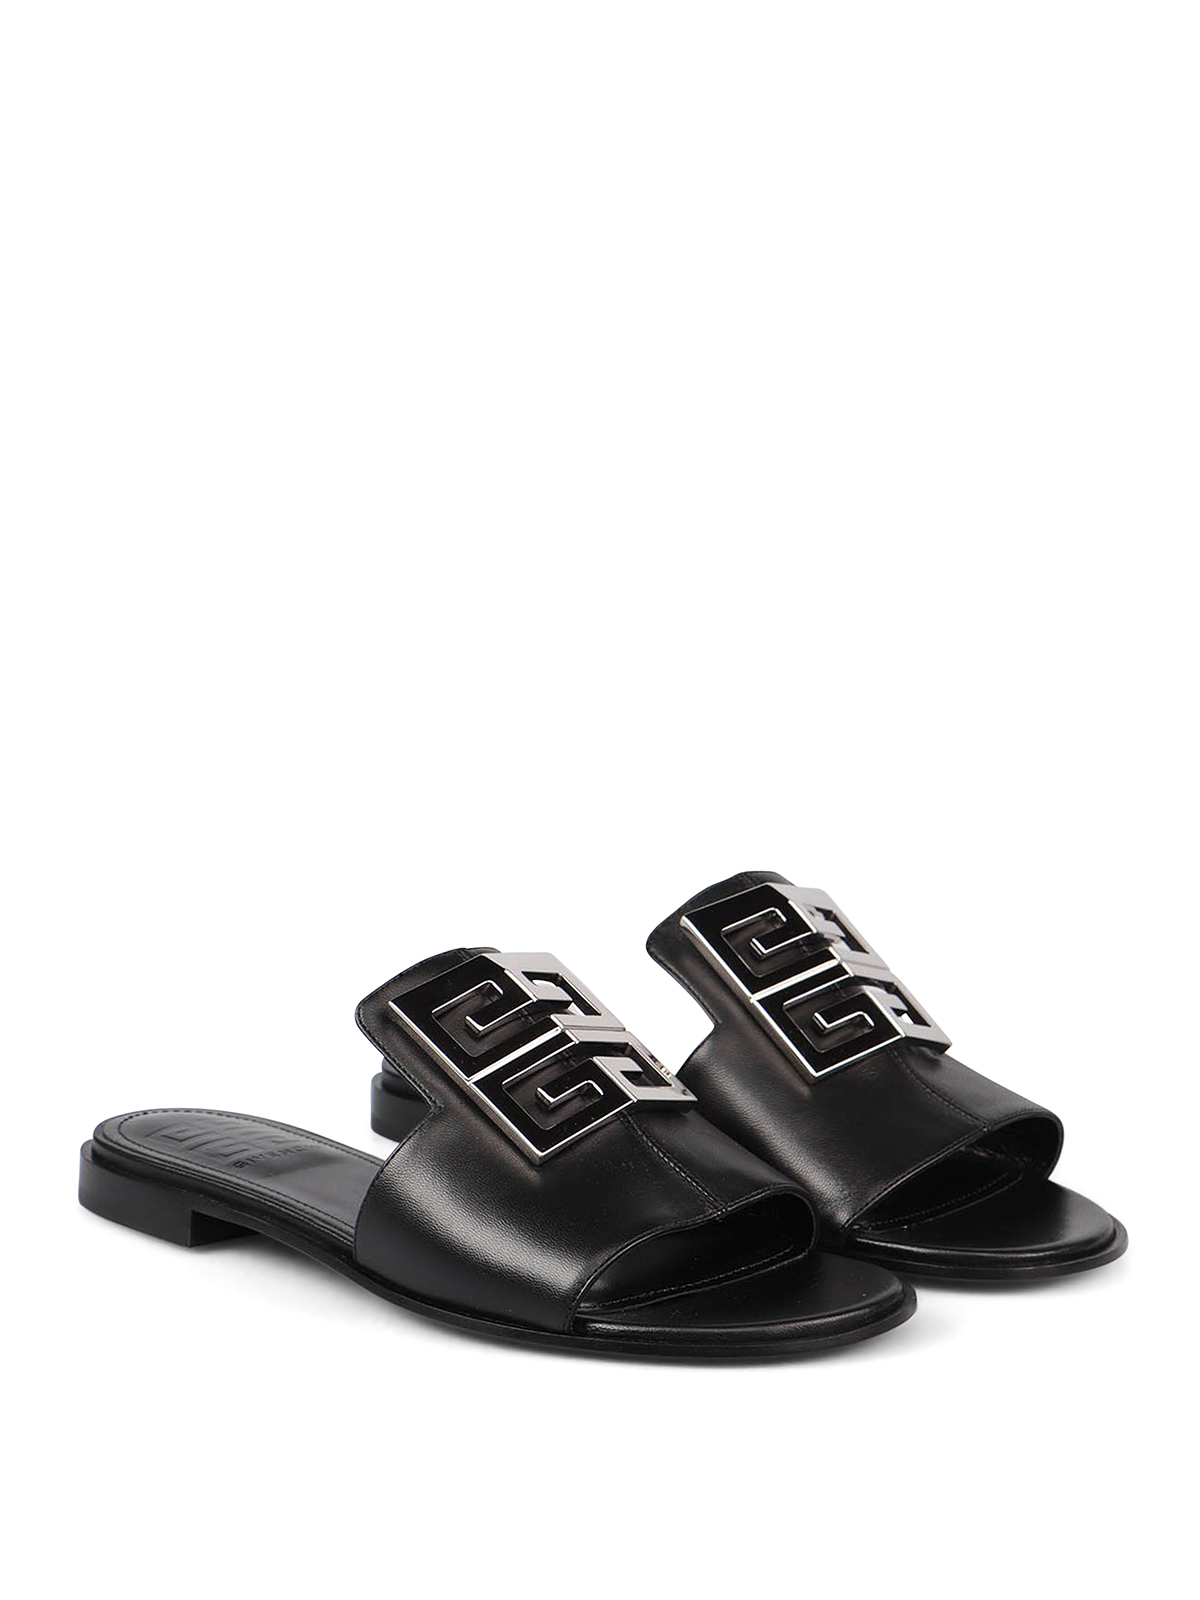 Sandals Givenchy - 4G sandals | thebs.com [ikrix.com]